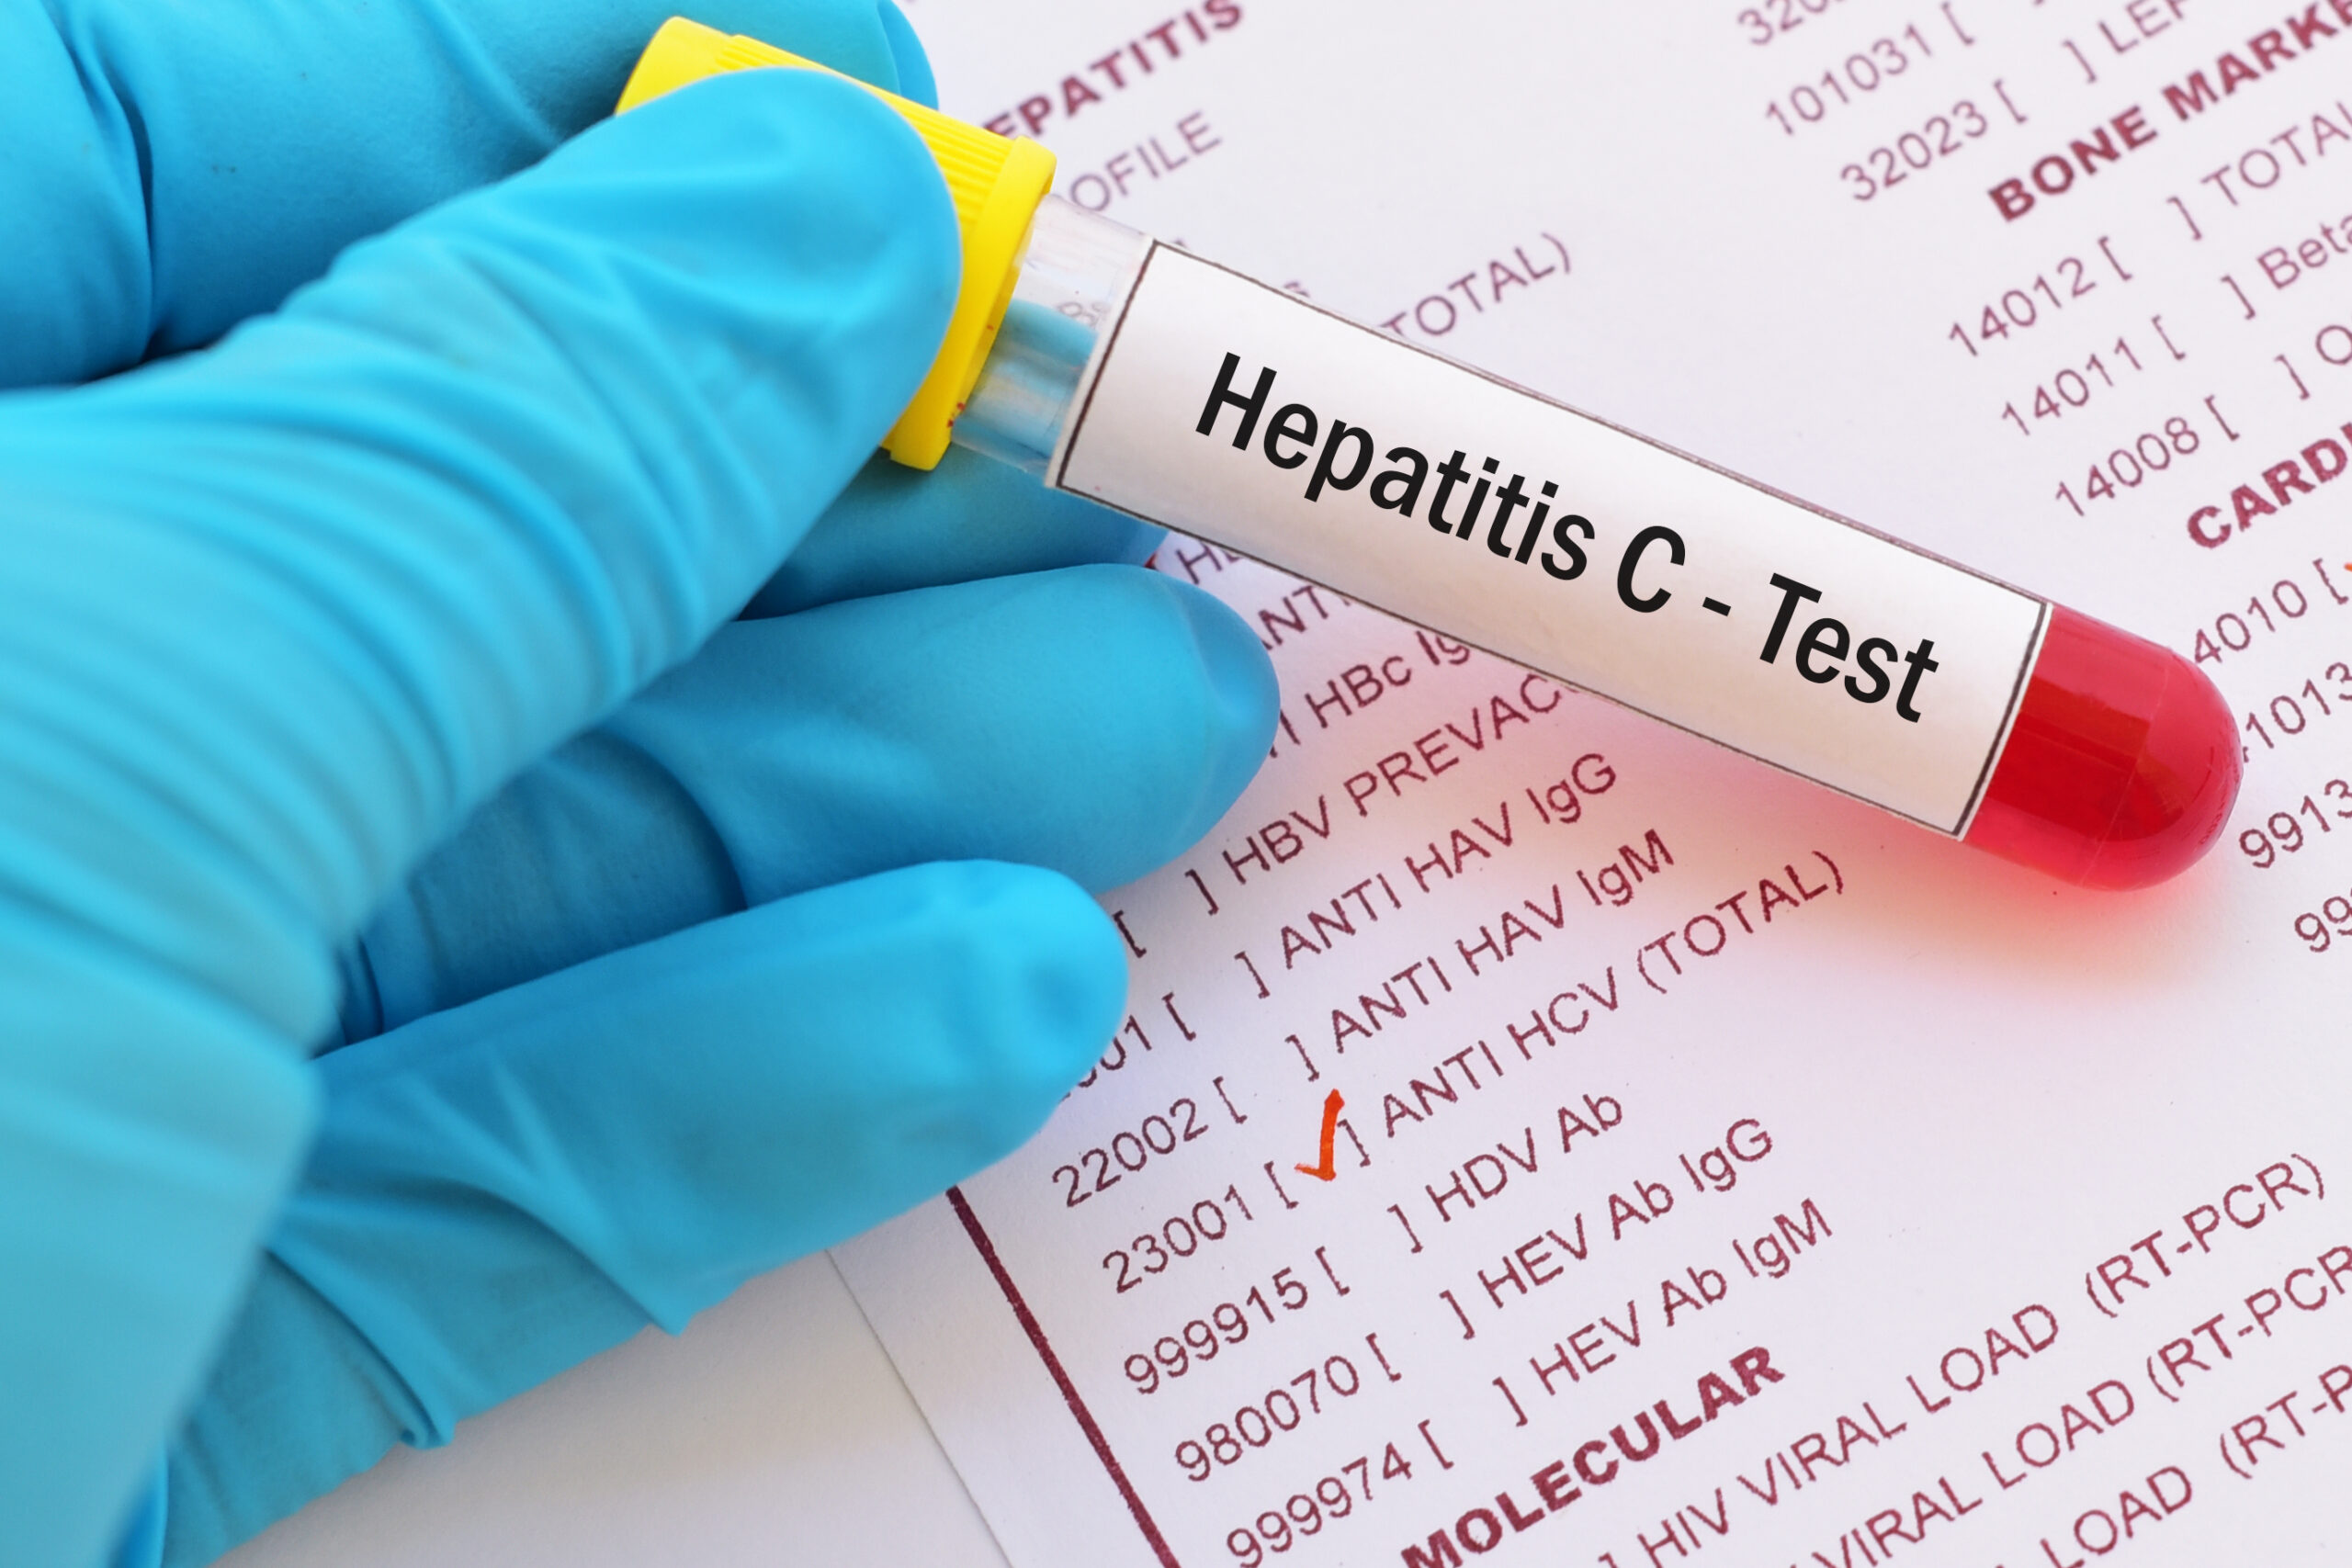 Teströhrchen für Hepatitis Test